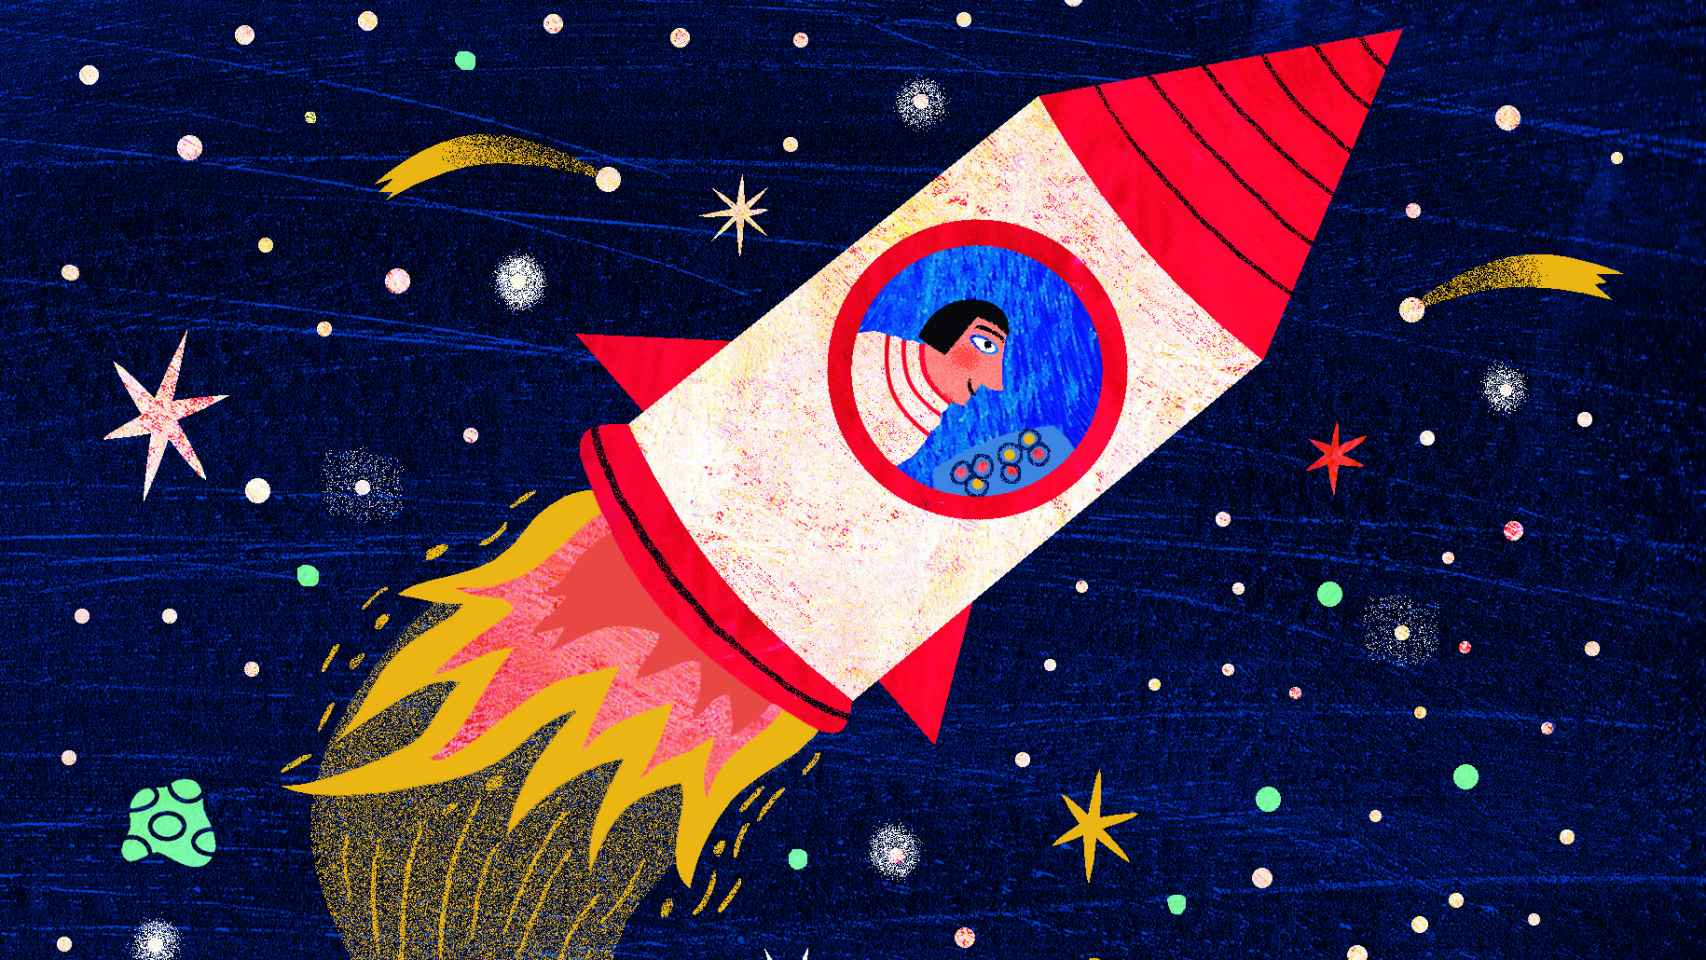 Detalle de una ilustración de 'La noche en el bolsillo' (Kalandraka), de Pedro Mañas y Mariana R. Johnson